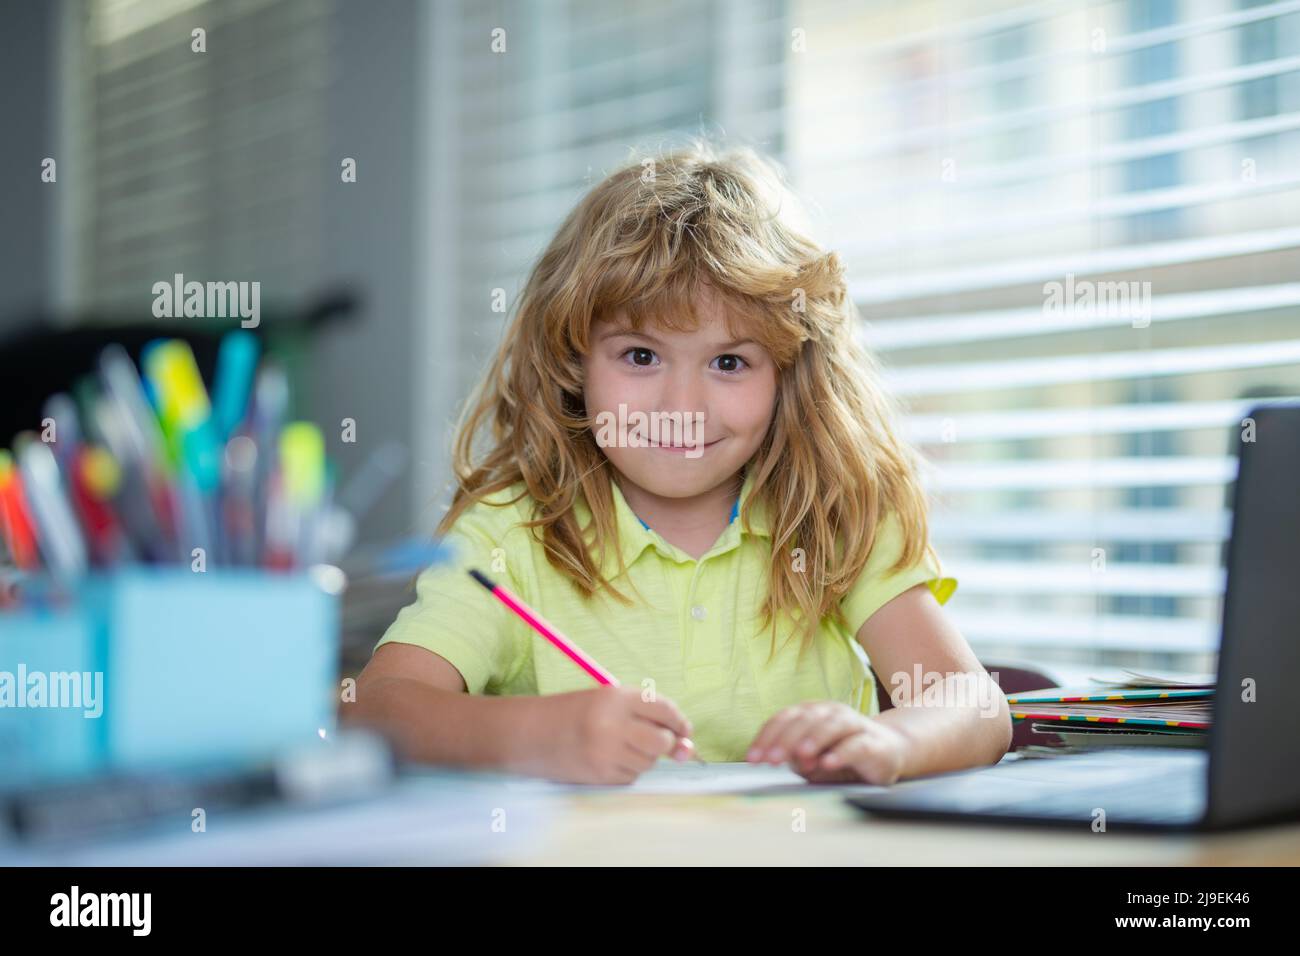 Genius Nerd Schüler Kind hat Idee. Lustige Kind Mädchen tun Hausaufgaben schreiben und lesen zu Hause. Kleiner Schüler am Schreibtisch im Klassenzimmer. Stockfoto